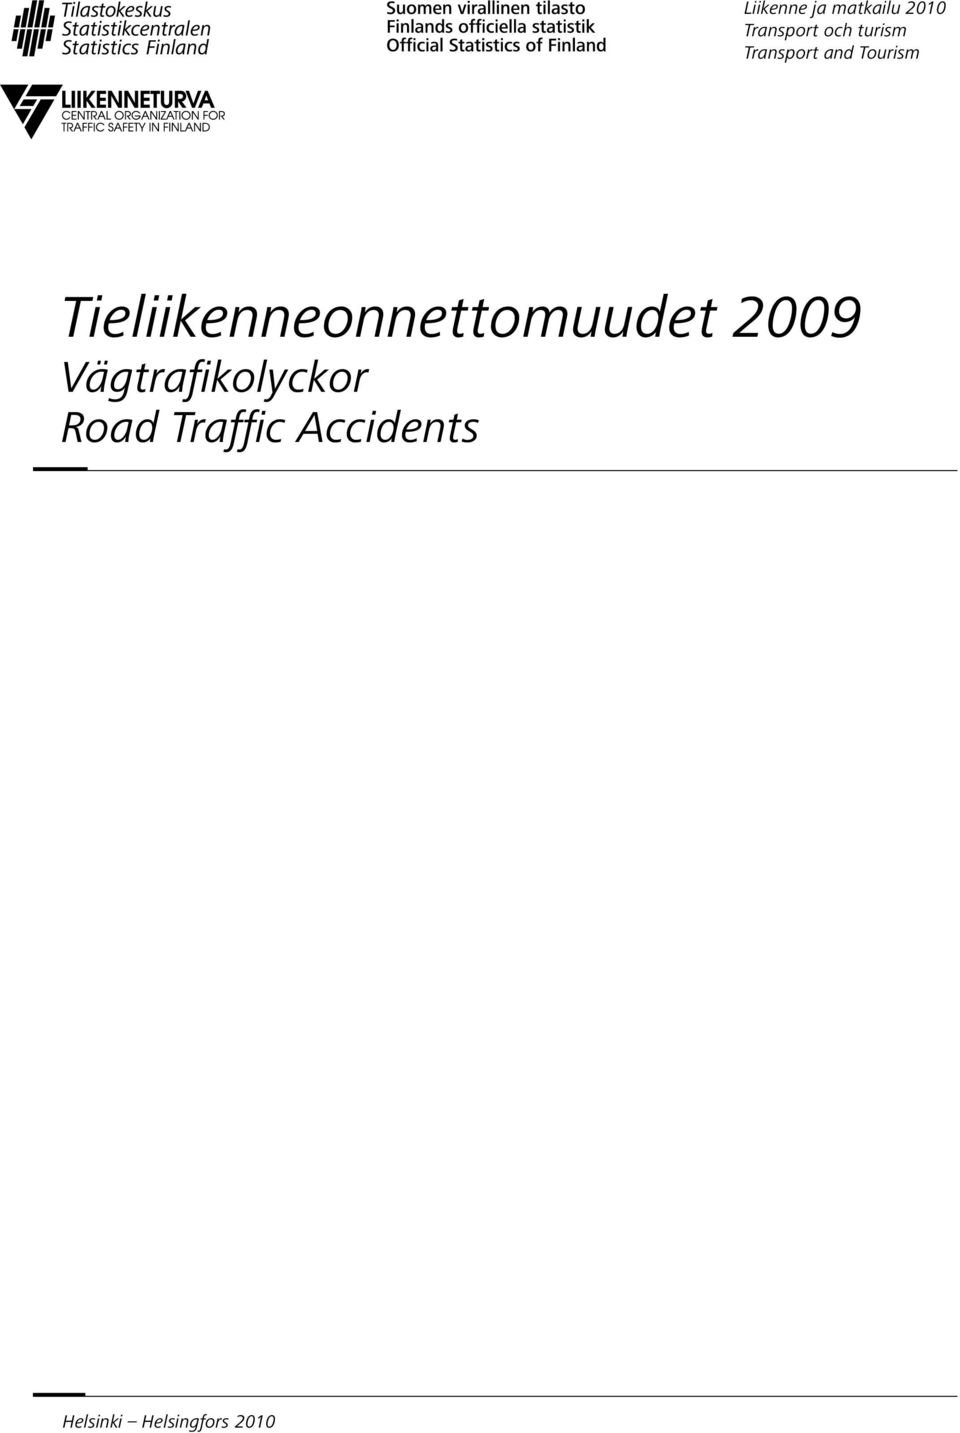 Tieliikenneonnettomuudet 2009